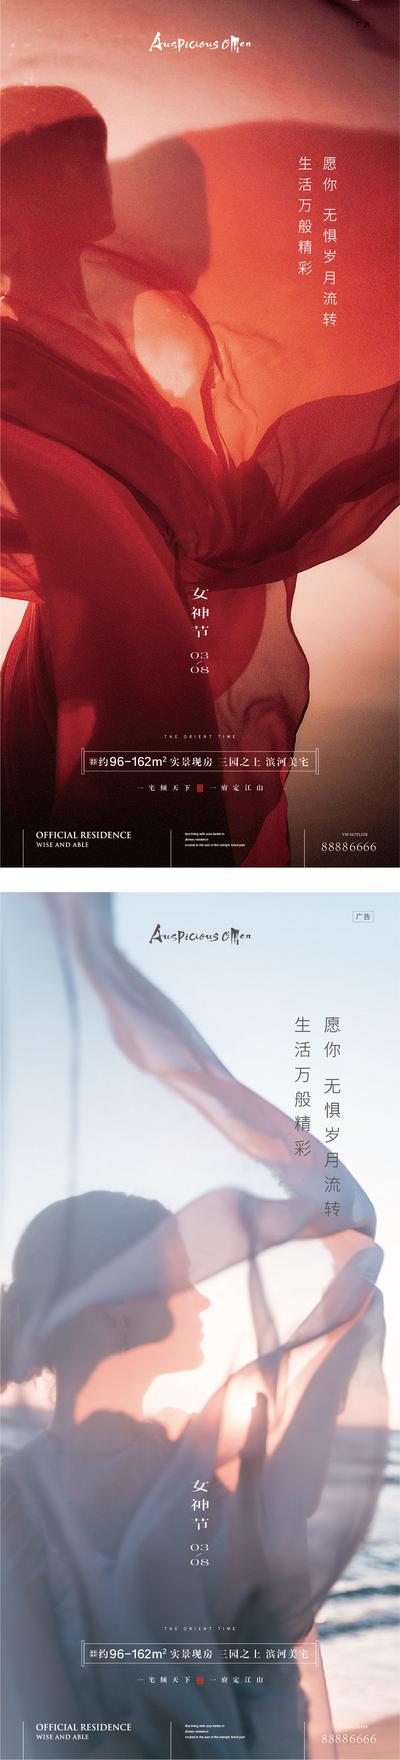 南门网 海报 公历节日 妇女节 38 女神节 简洁 人物 轻纱